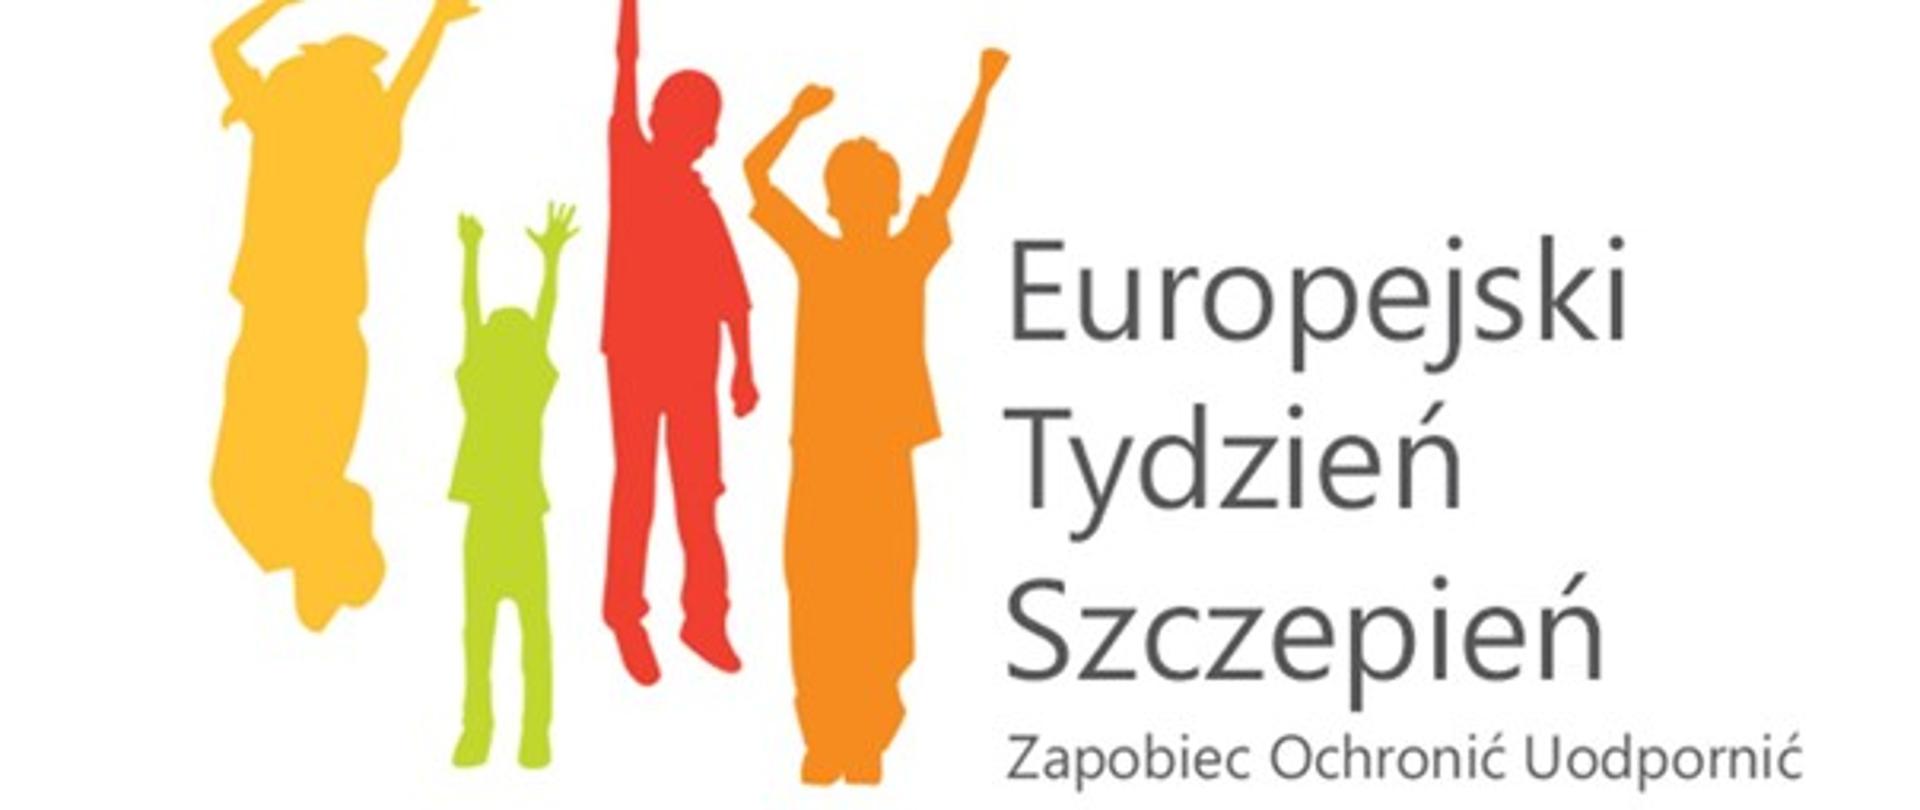 Obrazek przedstawia cztery osoby wypełnione jednolitym tłem oraz napis Europejski Tydzień Szczepień, Zapobiec, Ochronić, Uodpornić